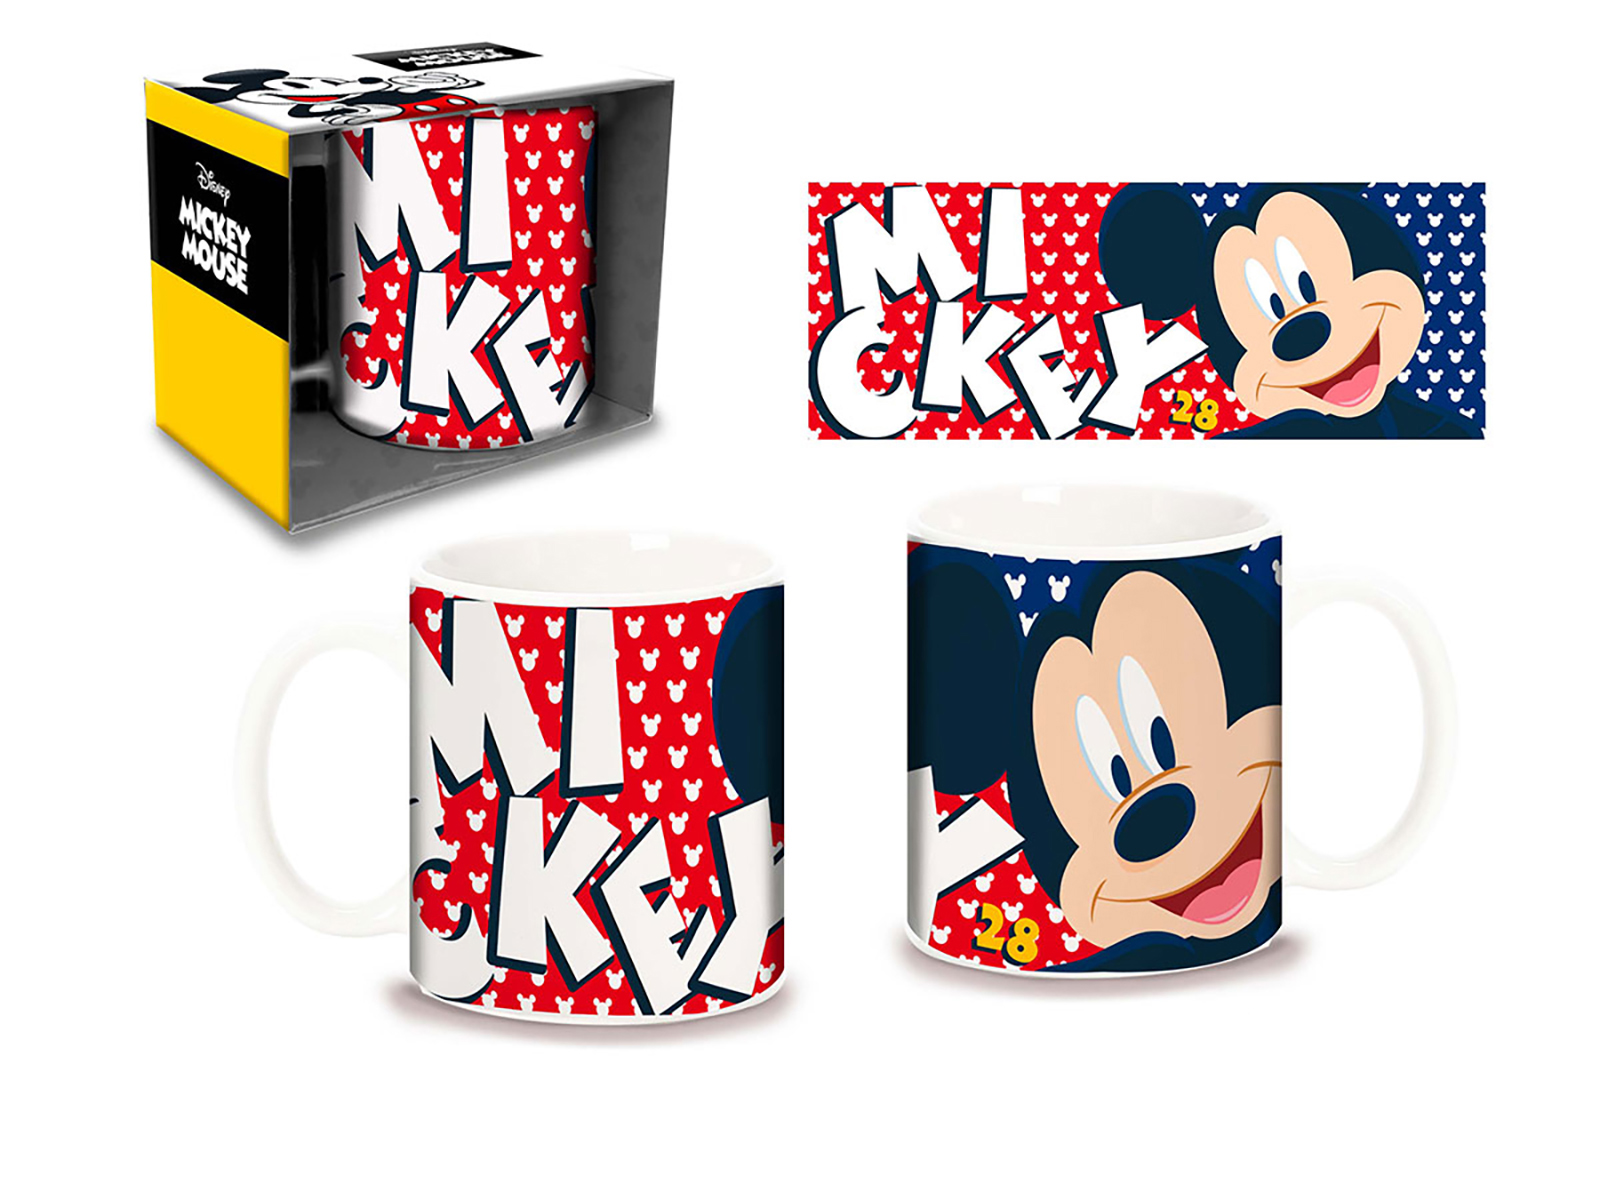 Disney Tasse Mickey Mouse - Tassen, Gläser, Schalen jetzt im Shop bestellen  Close Up GmbH